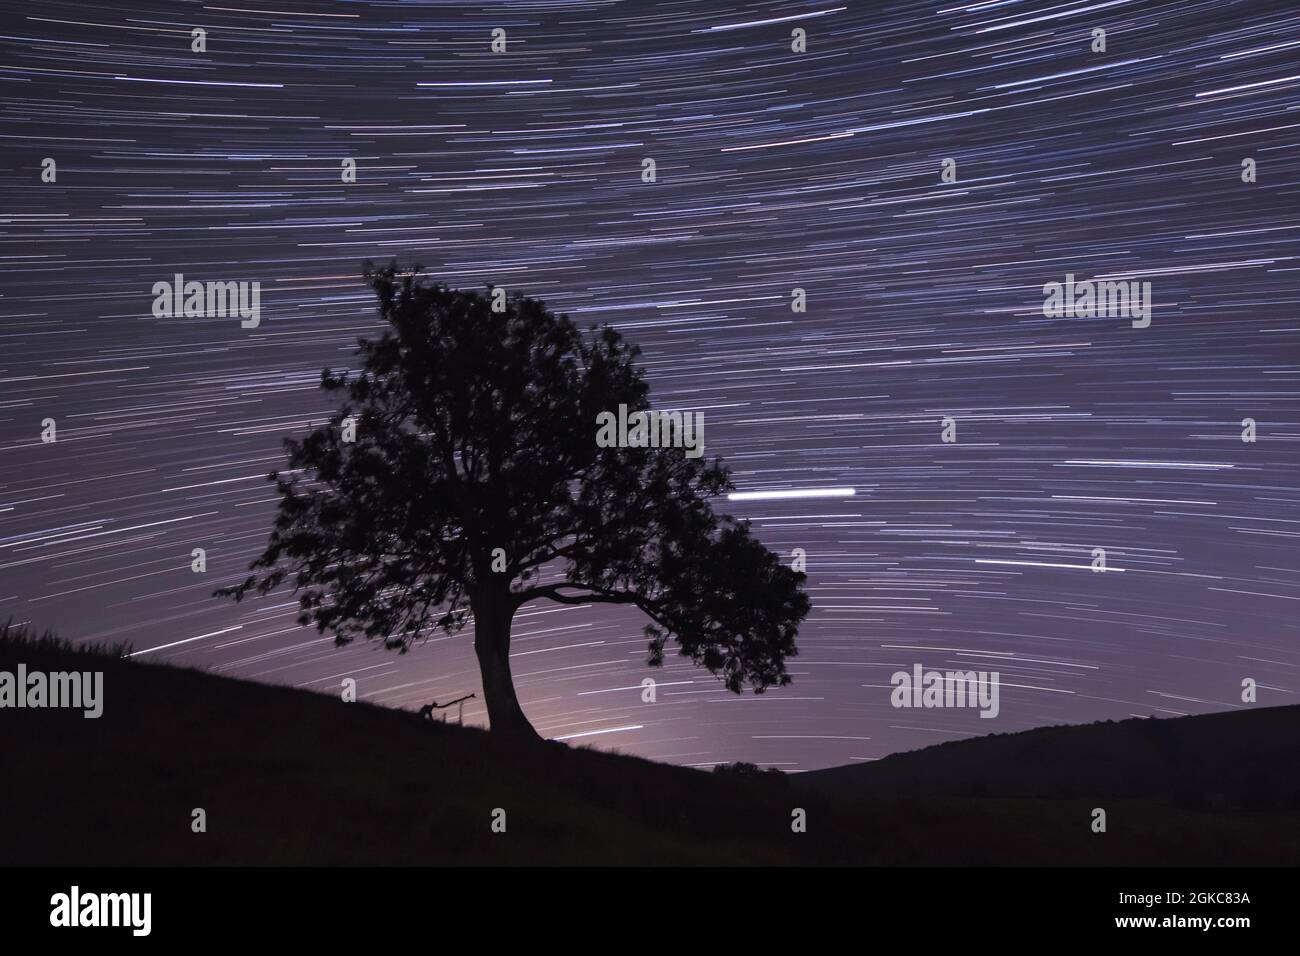 Les traces d'étoiles et les planètes se déplaçant à travers le ciel nocturne, Jupiter laissant une ligne de droite de l'arbre, Saturne évanescent, droite et inférieur. Septembre 2021 Royaume-Uni Banque D'Images